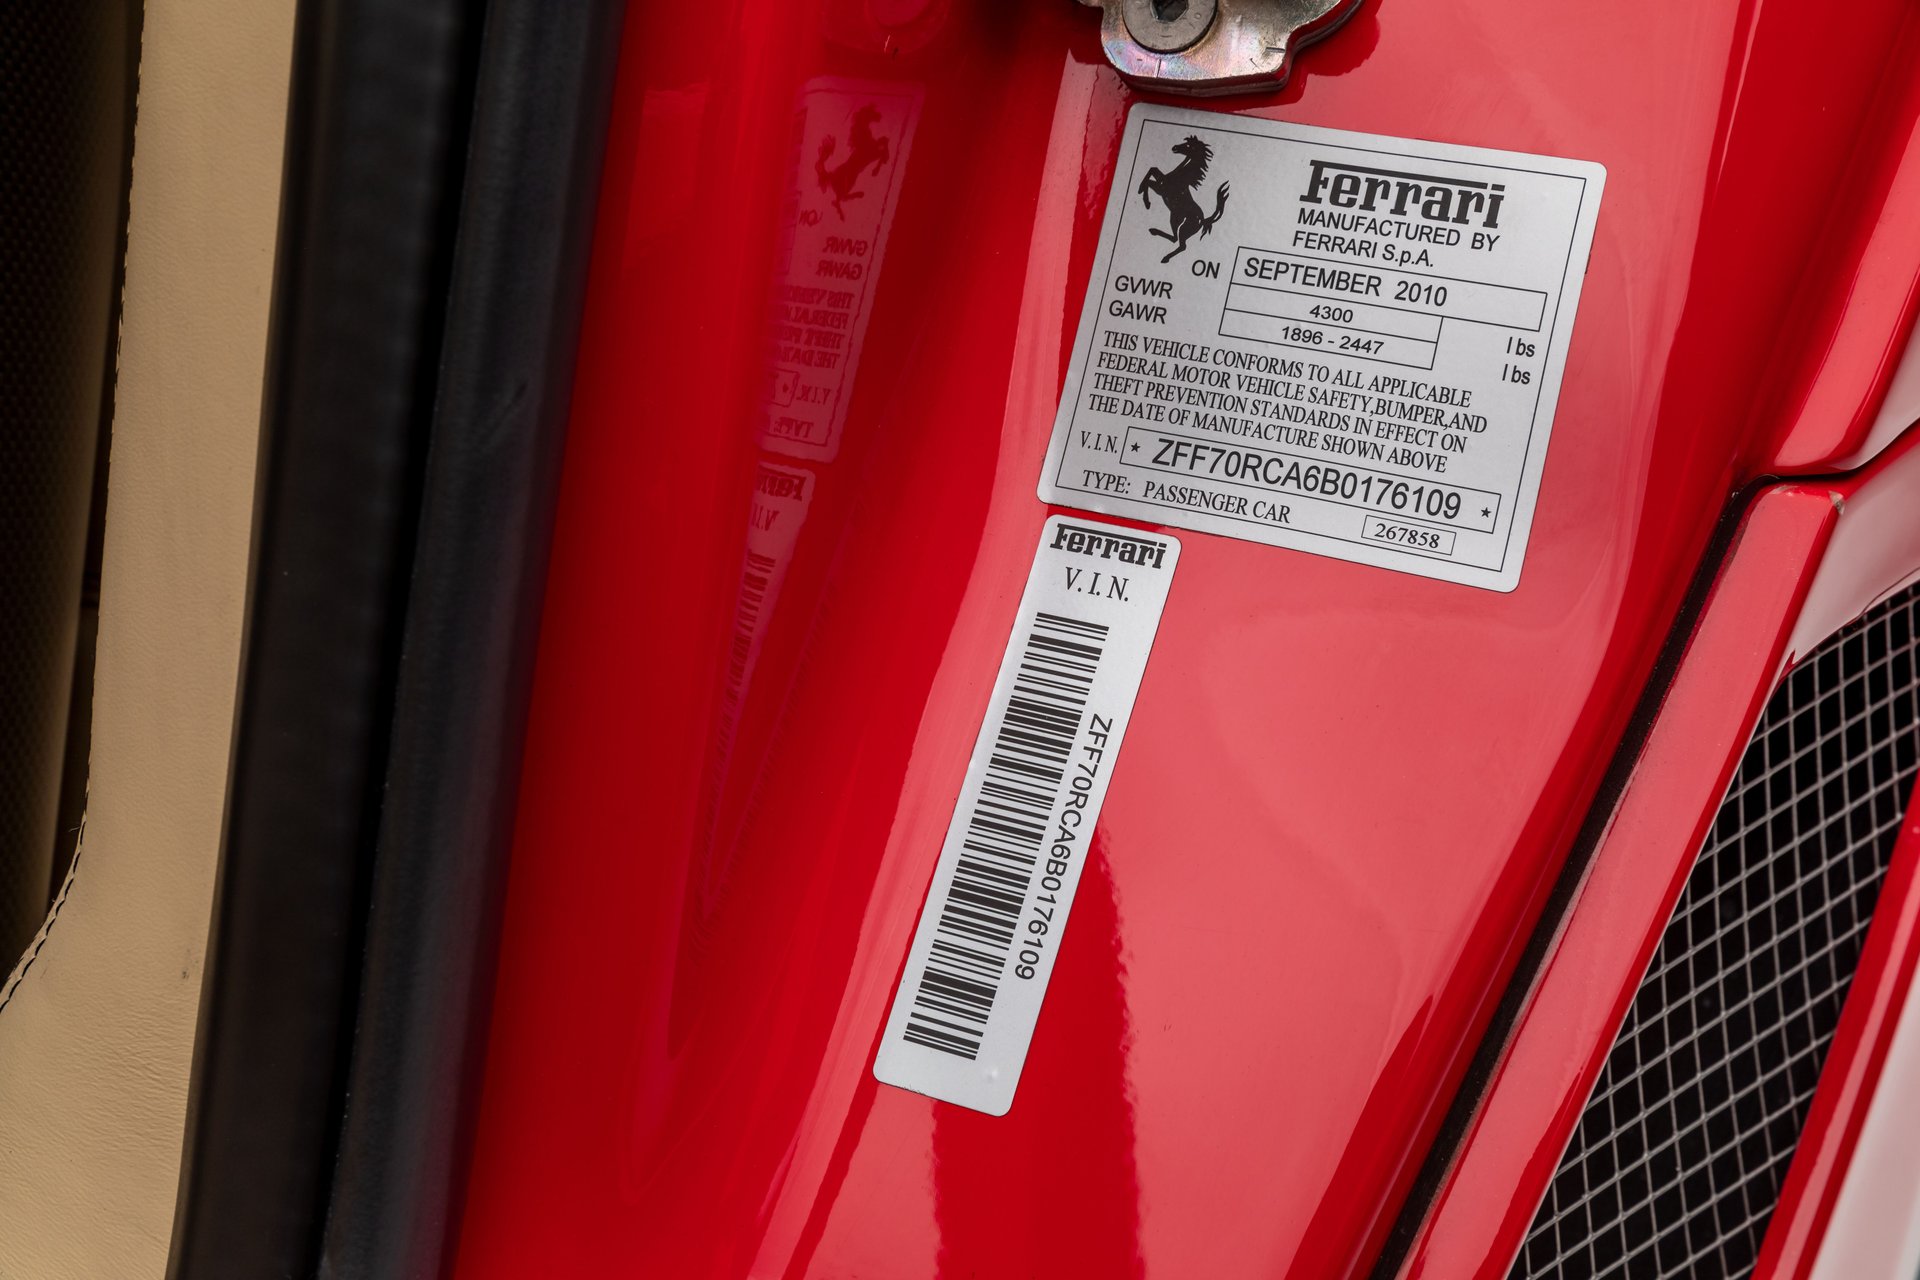 For Sale 2011 Ferrari 599 GTO